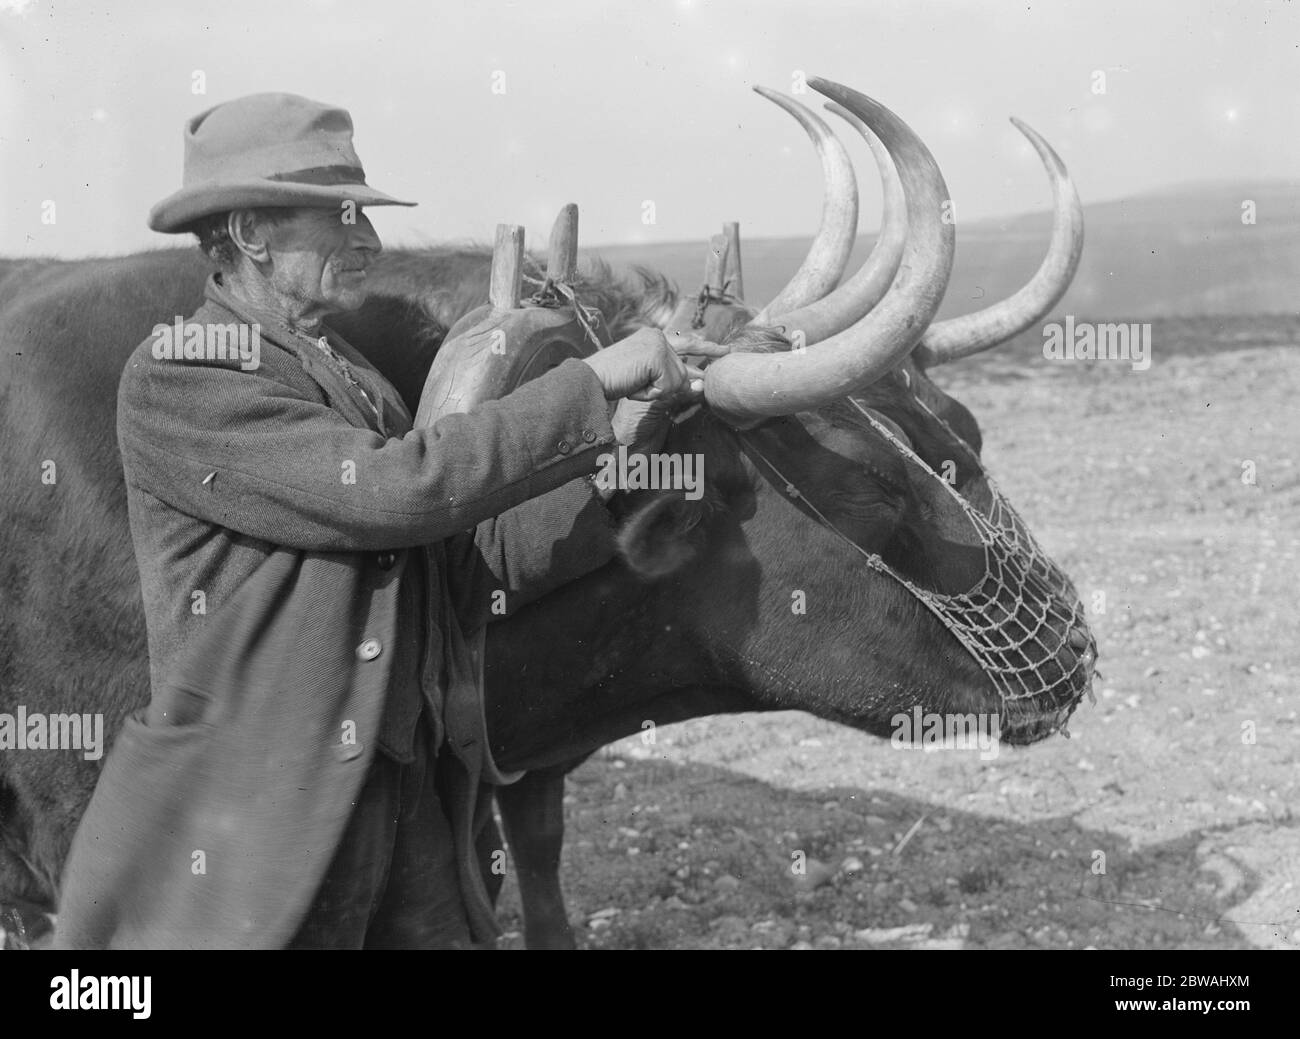 Ochsen auf einem Bauernhof in Sussex das Alter des Tieres wird durch die Anzahl der Ringe auf seinem Horn festgestellt, dieses hat 14 22. April 1923 Stockfoto